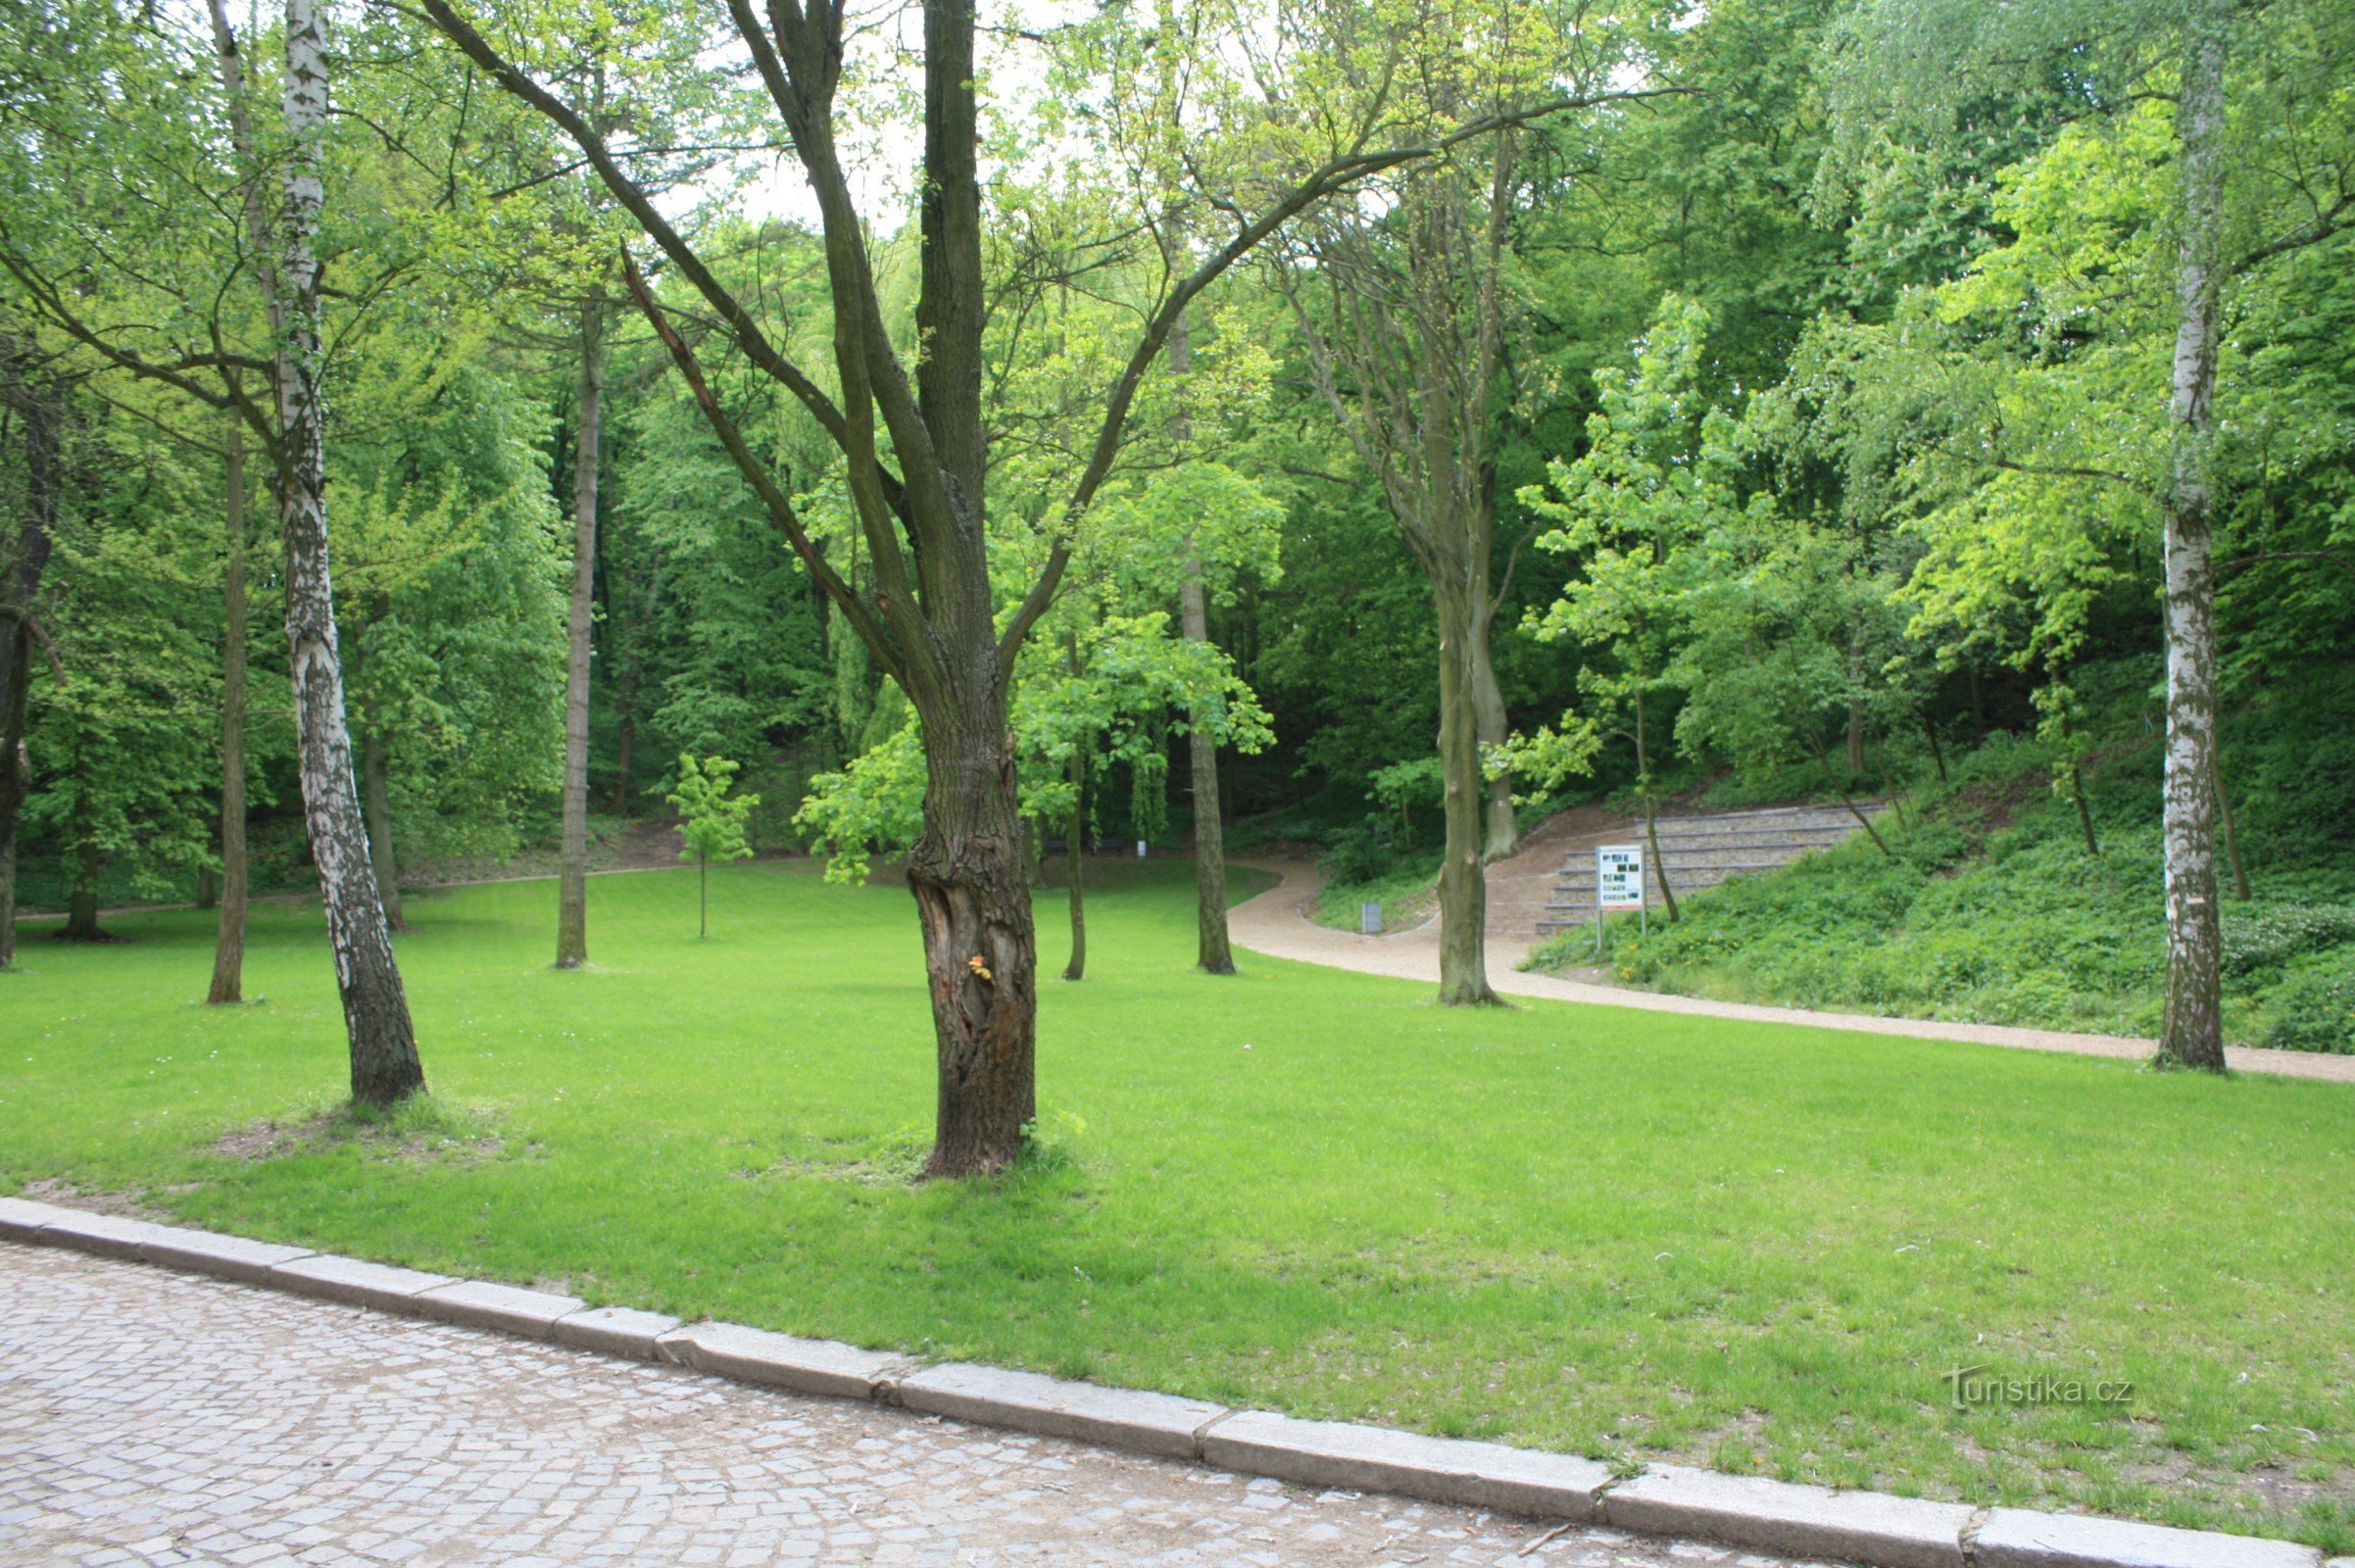 イヴァンチツェ - レナ市立公園